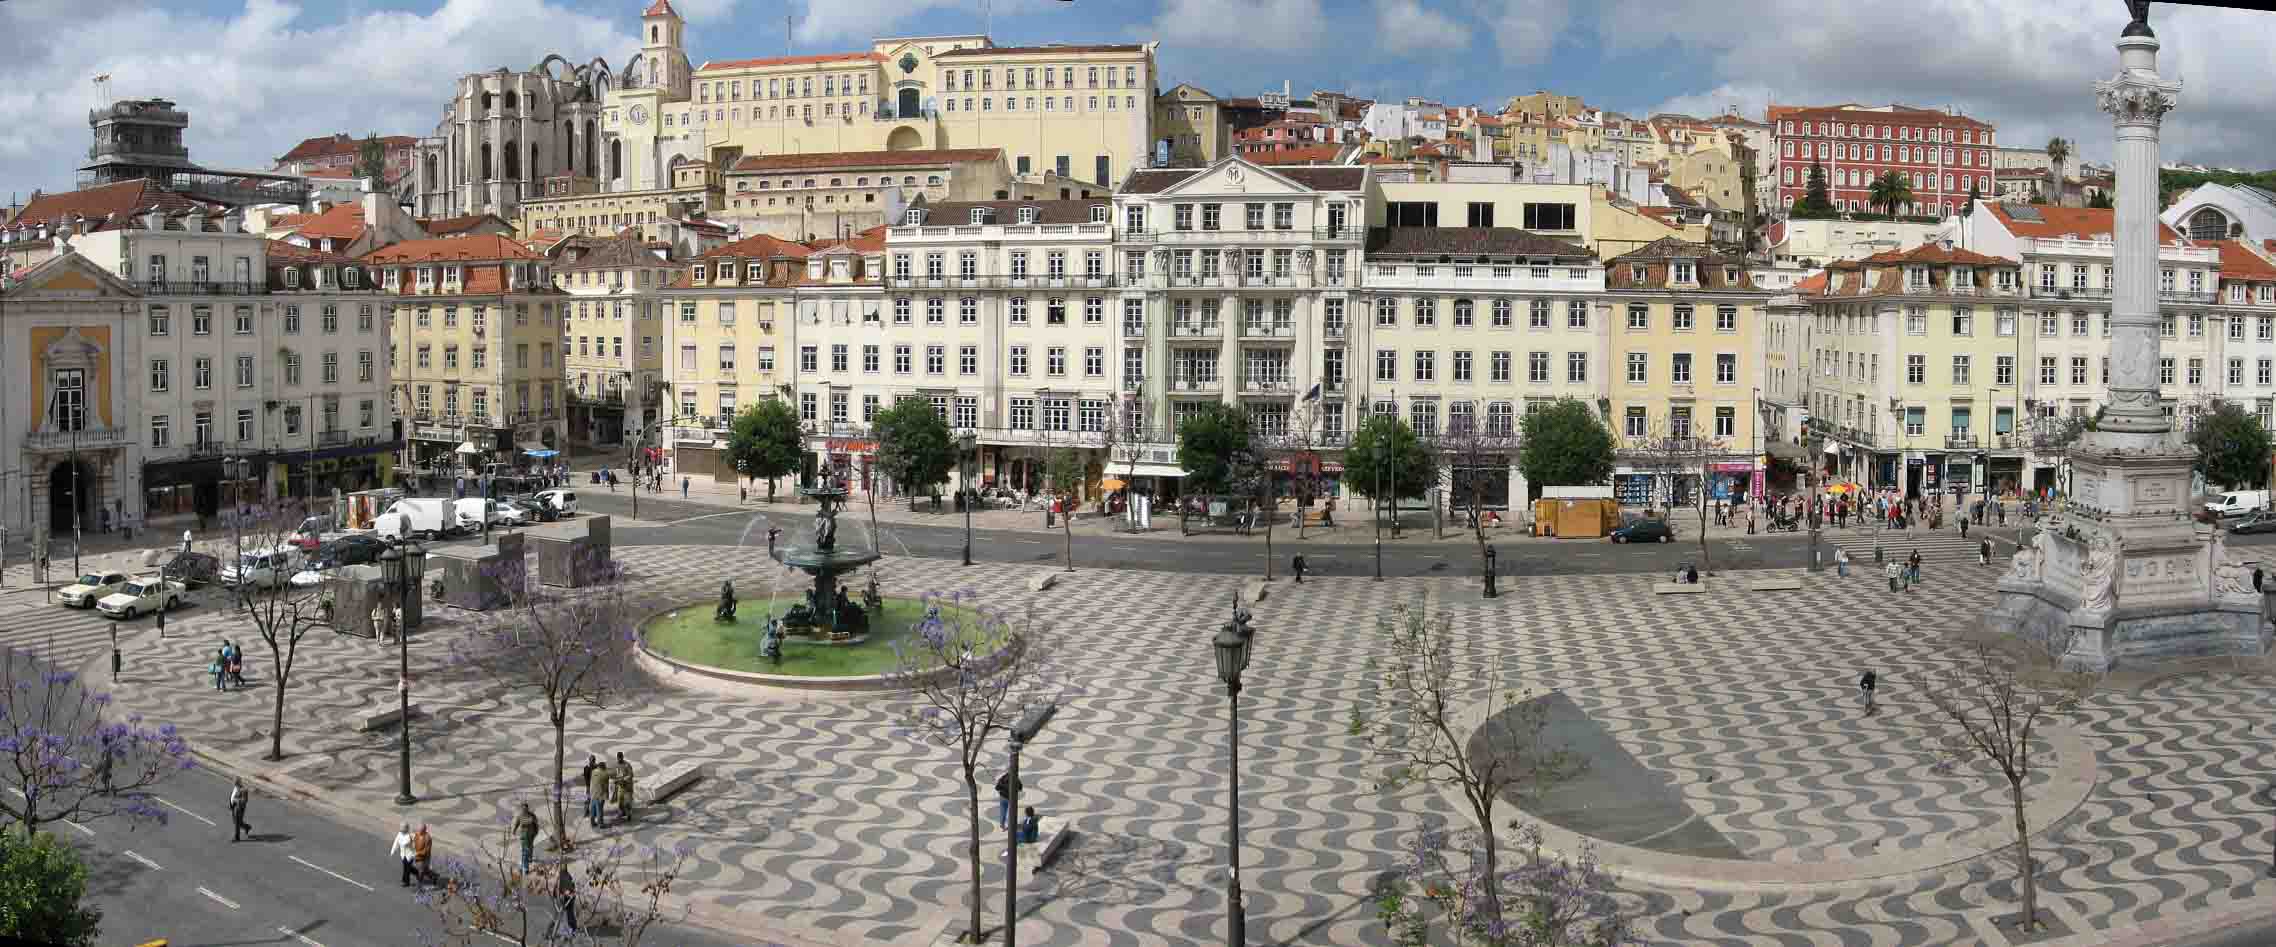 praca do rossio lisbon city center